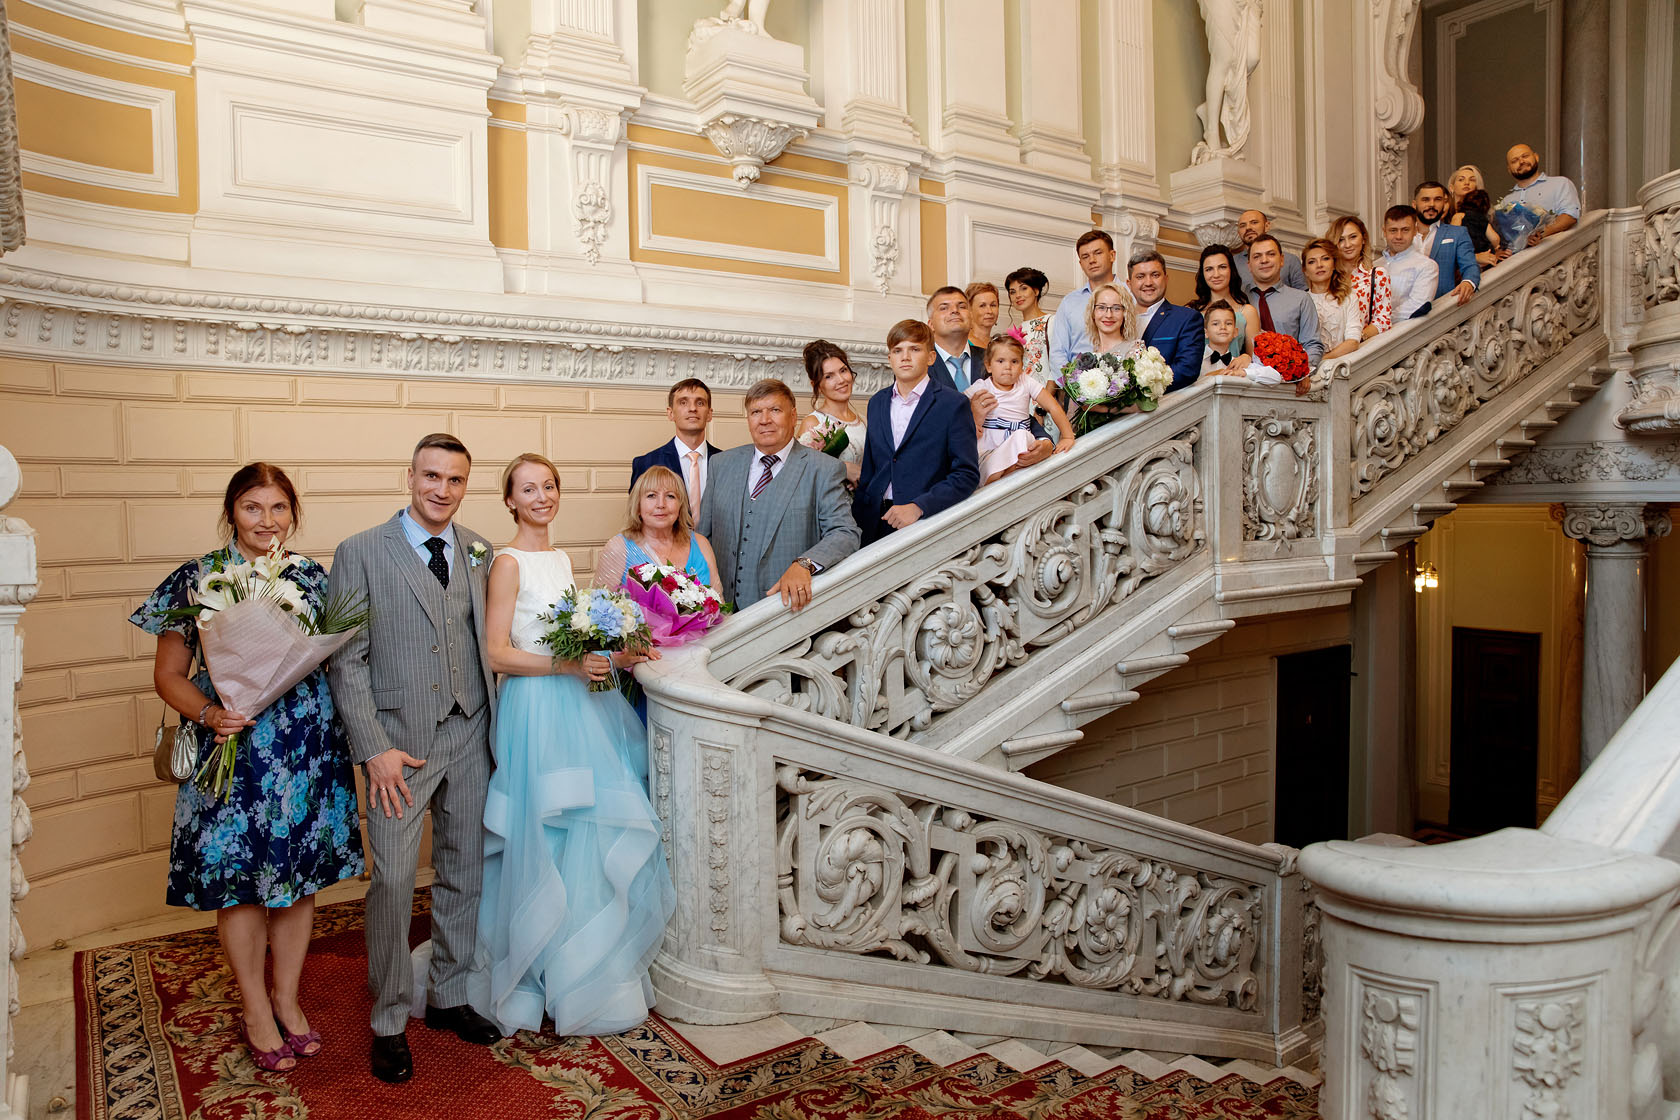 Санкт-Петербург английская набережная 28 дворец бракосочетания 1